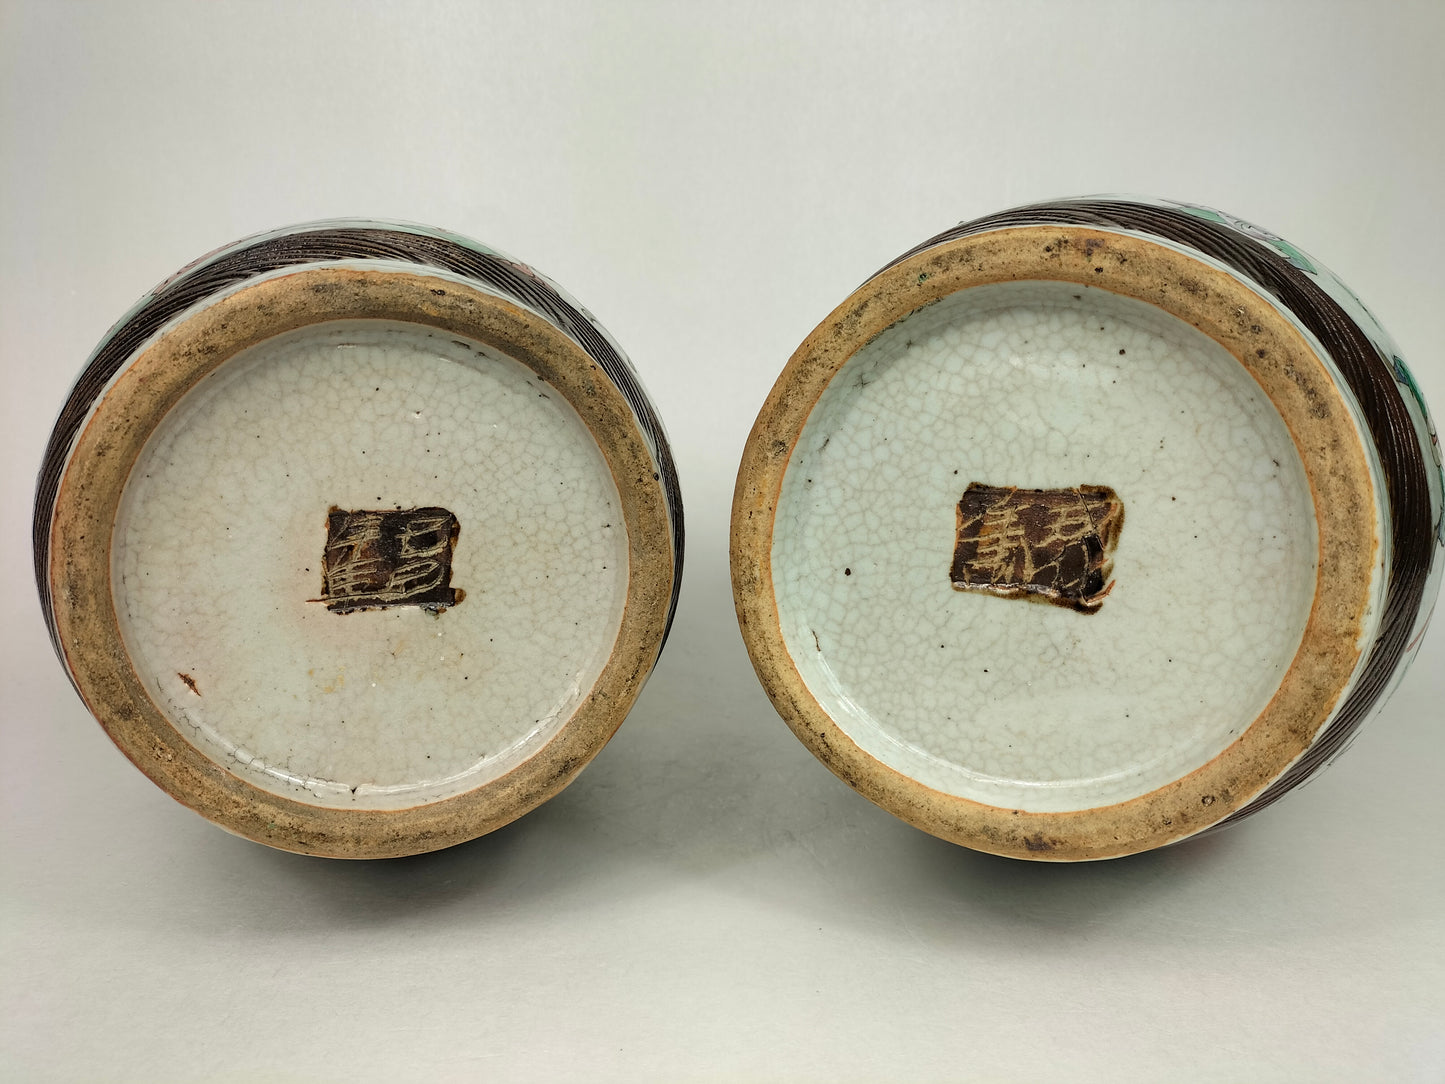 Par de vasos antigos chineses de Nanquim decorados com guerreiros // Dinastia Qing - século XIX